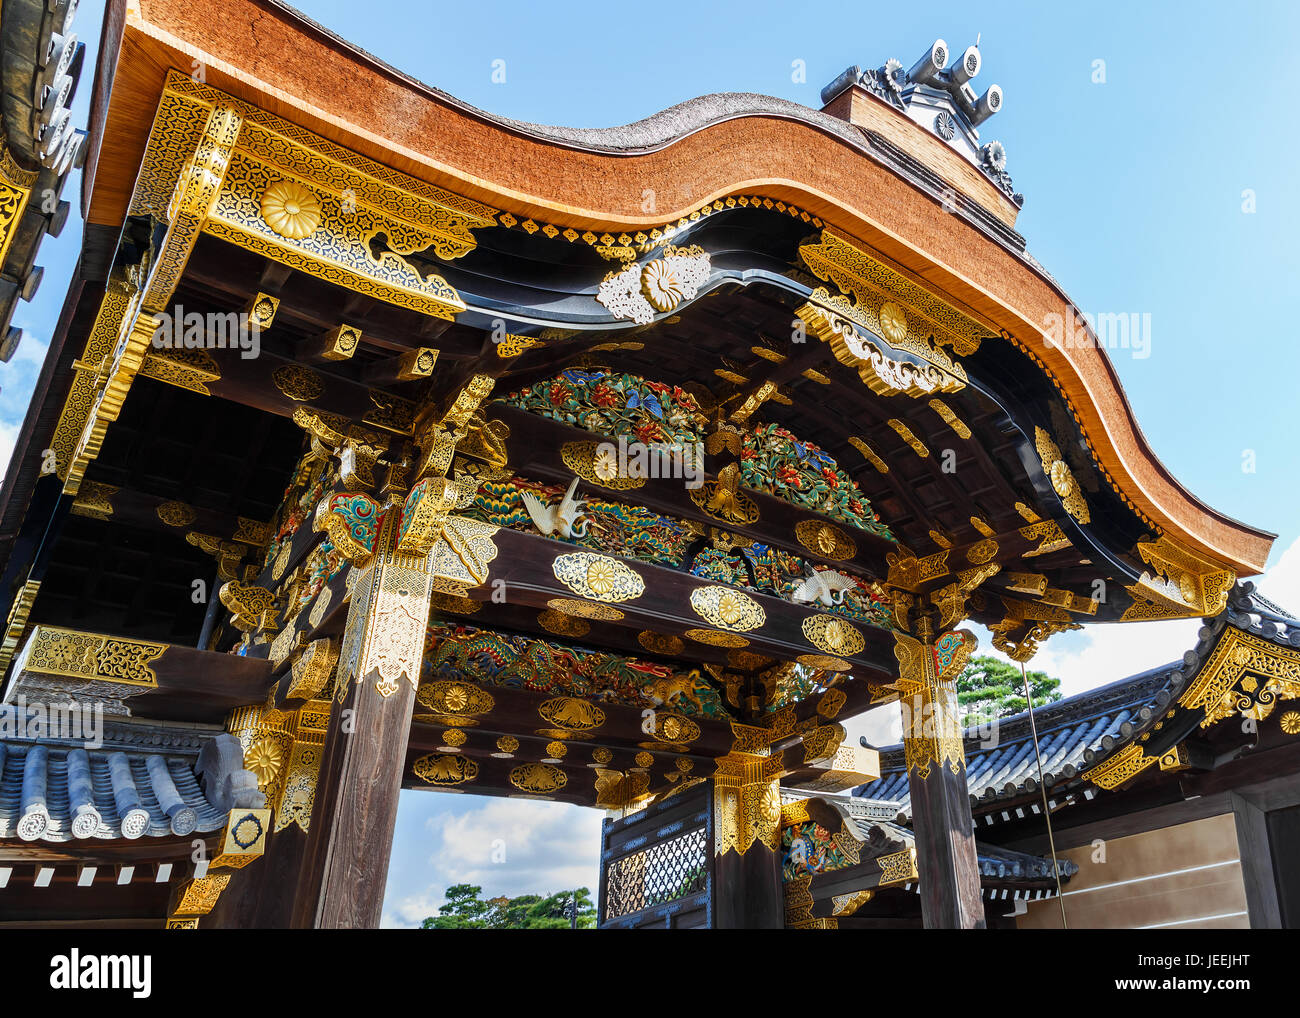 Nijo Castle in Kyoto, Japan Stock Photo